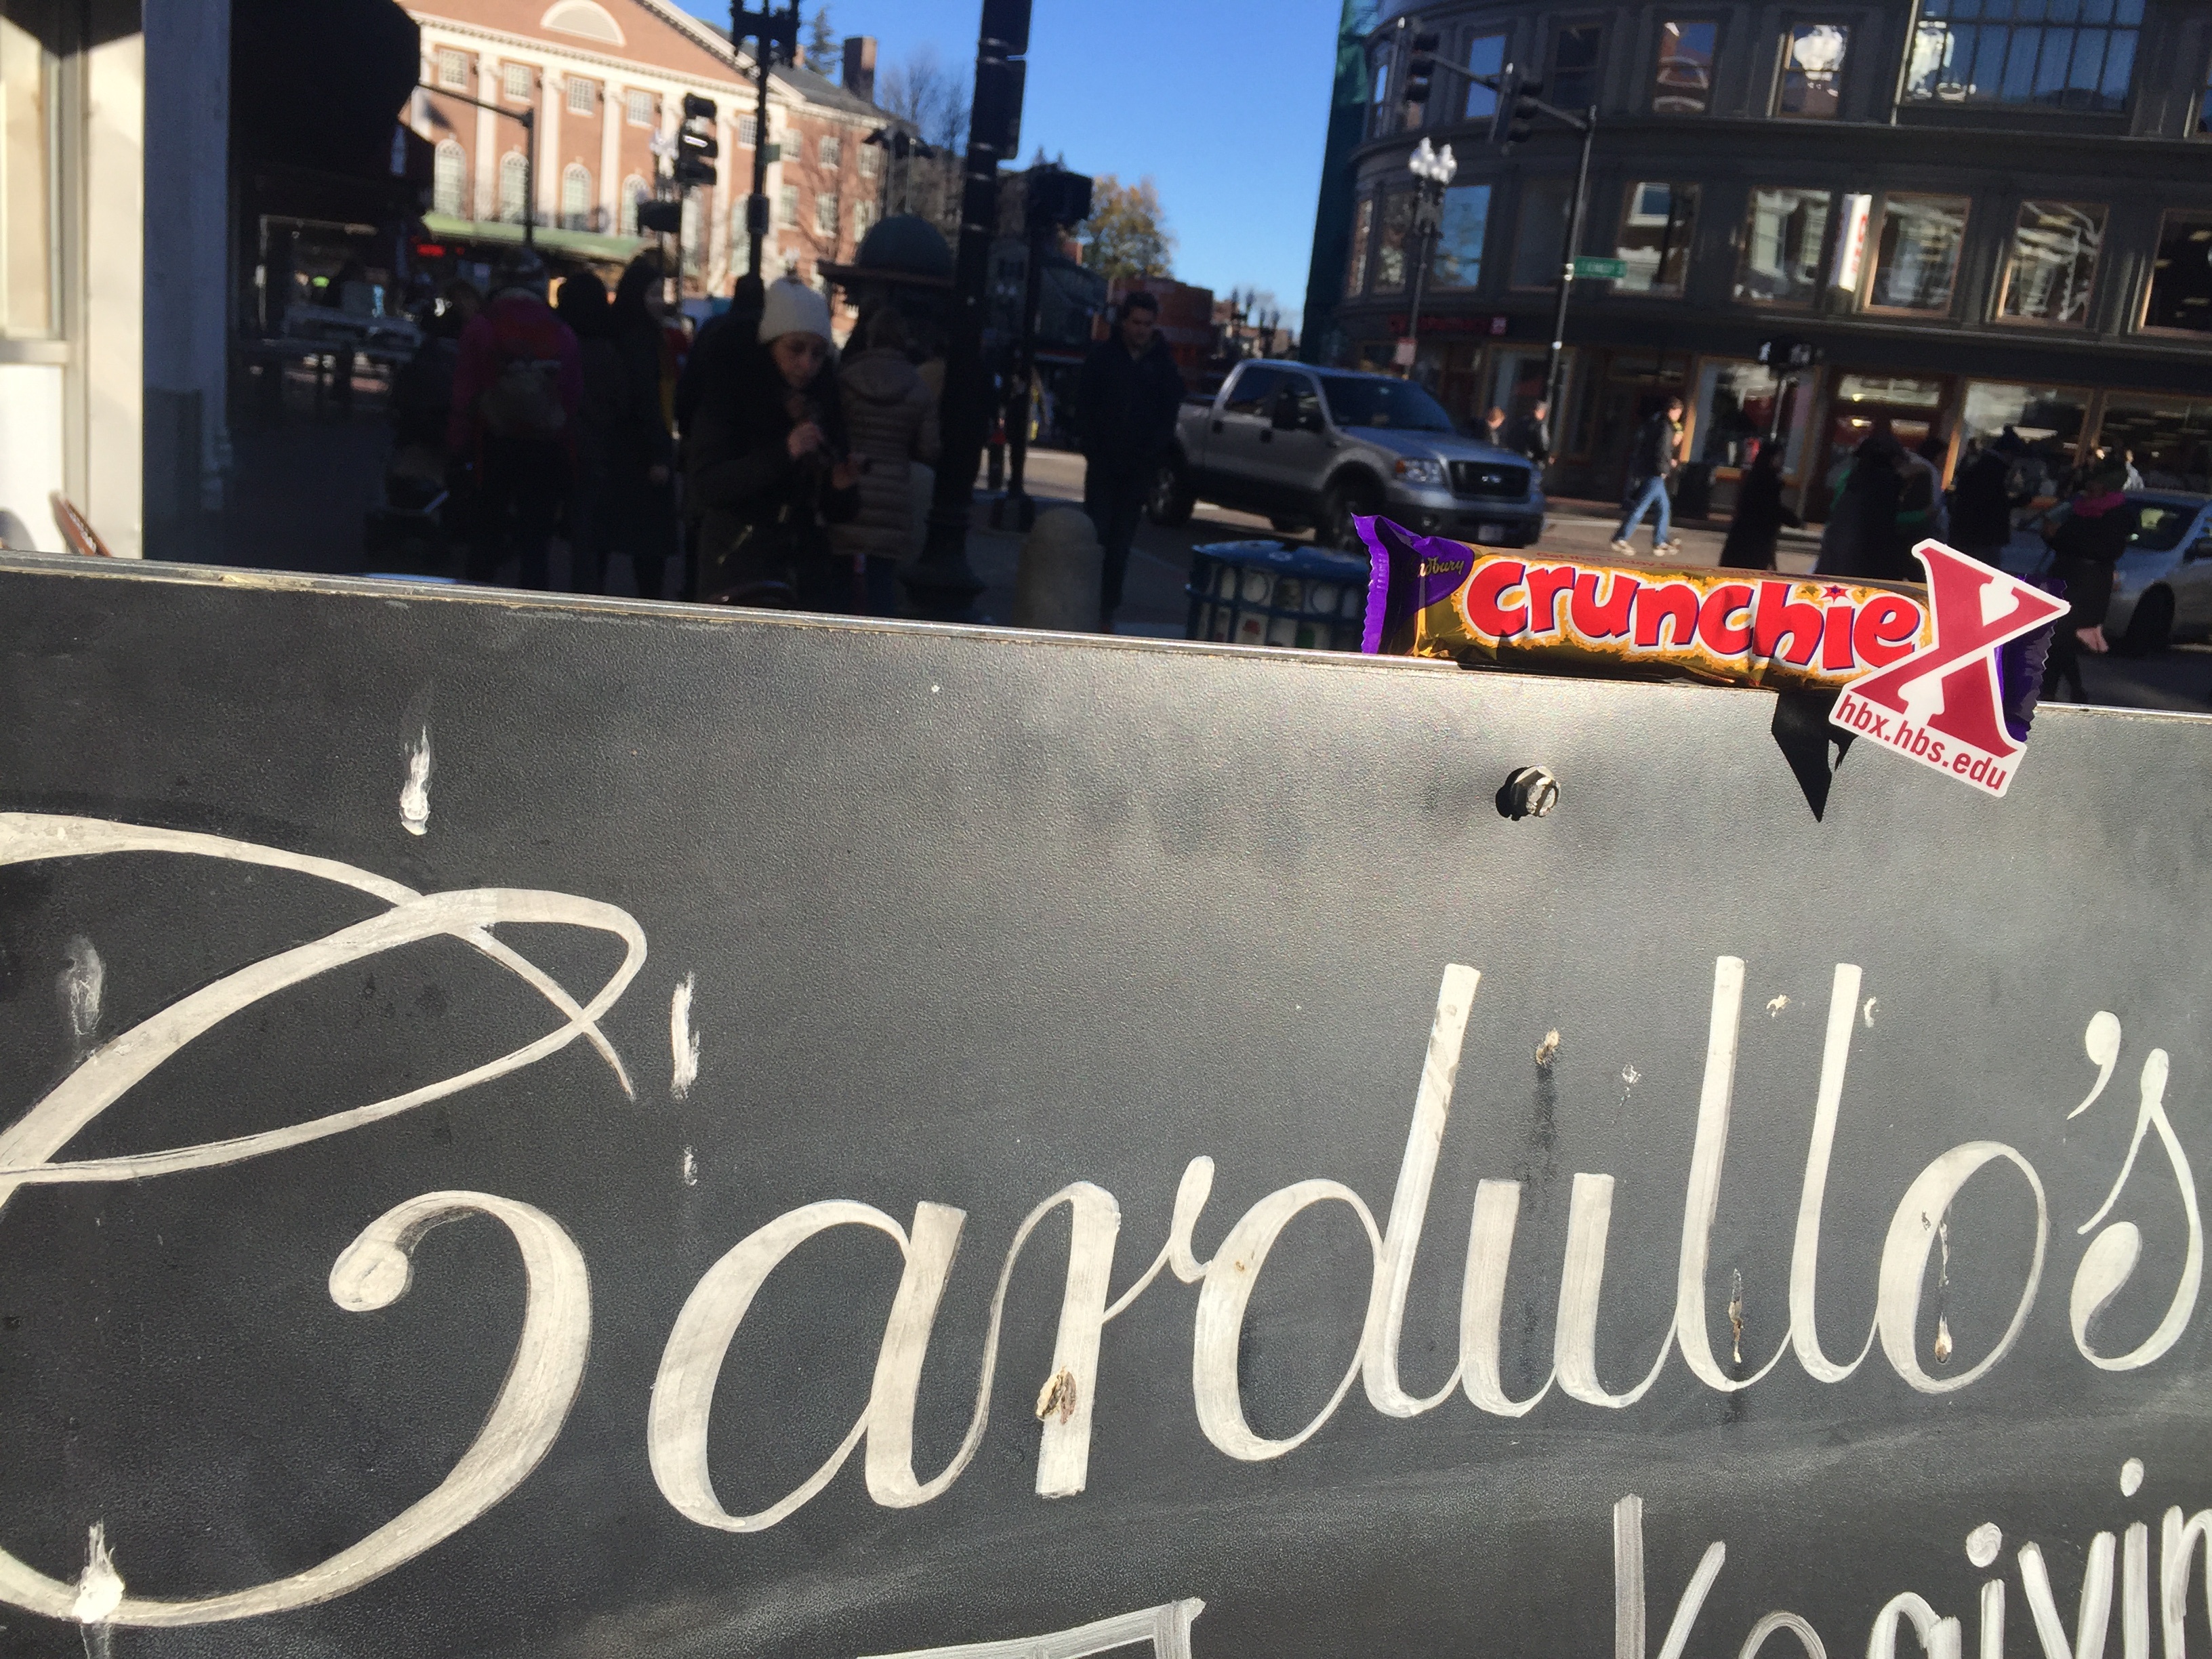 Cardullo's Deli Sign - Photo by HBX